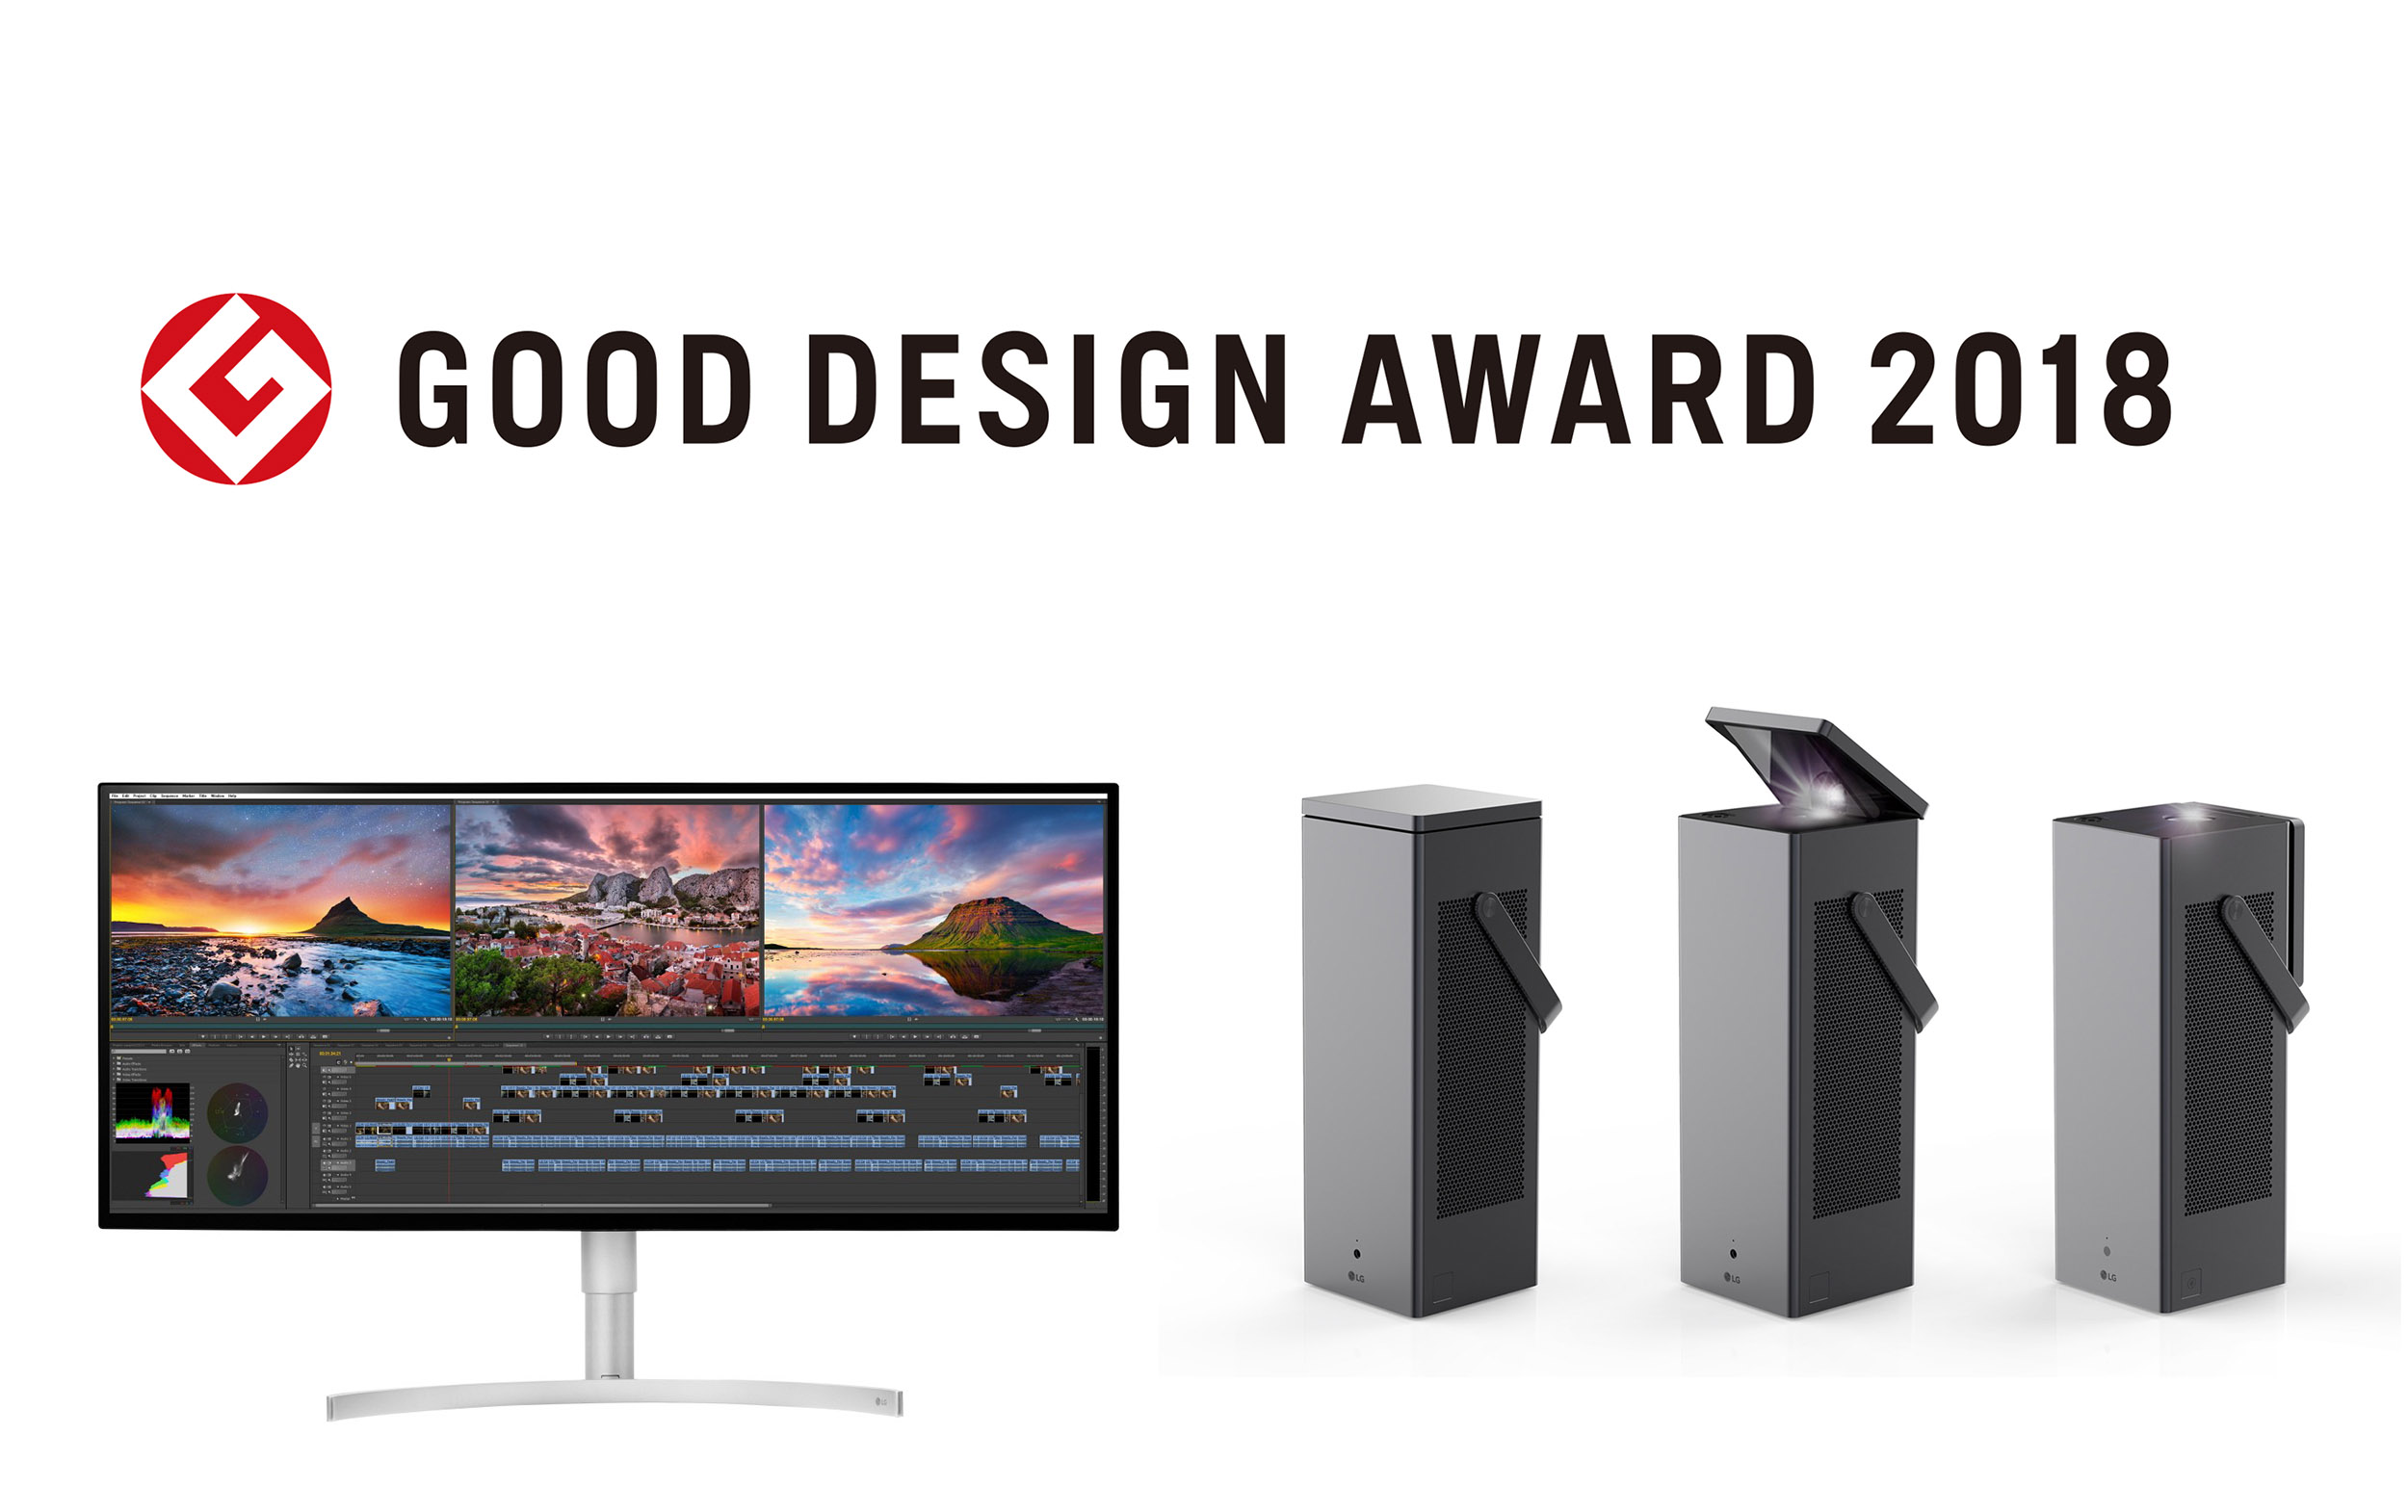 일본디자인진흥회가 발표한 ‘굿디자인상 어워드 2018(Good Design Award 2018)’에서 ‘Best 100’에 선정된 ‘LG 울트라와이드 모니터'와 ‘LG 시네빔 레이저 4K’ 